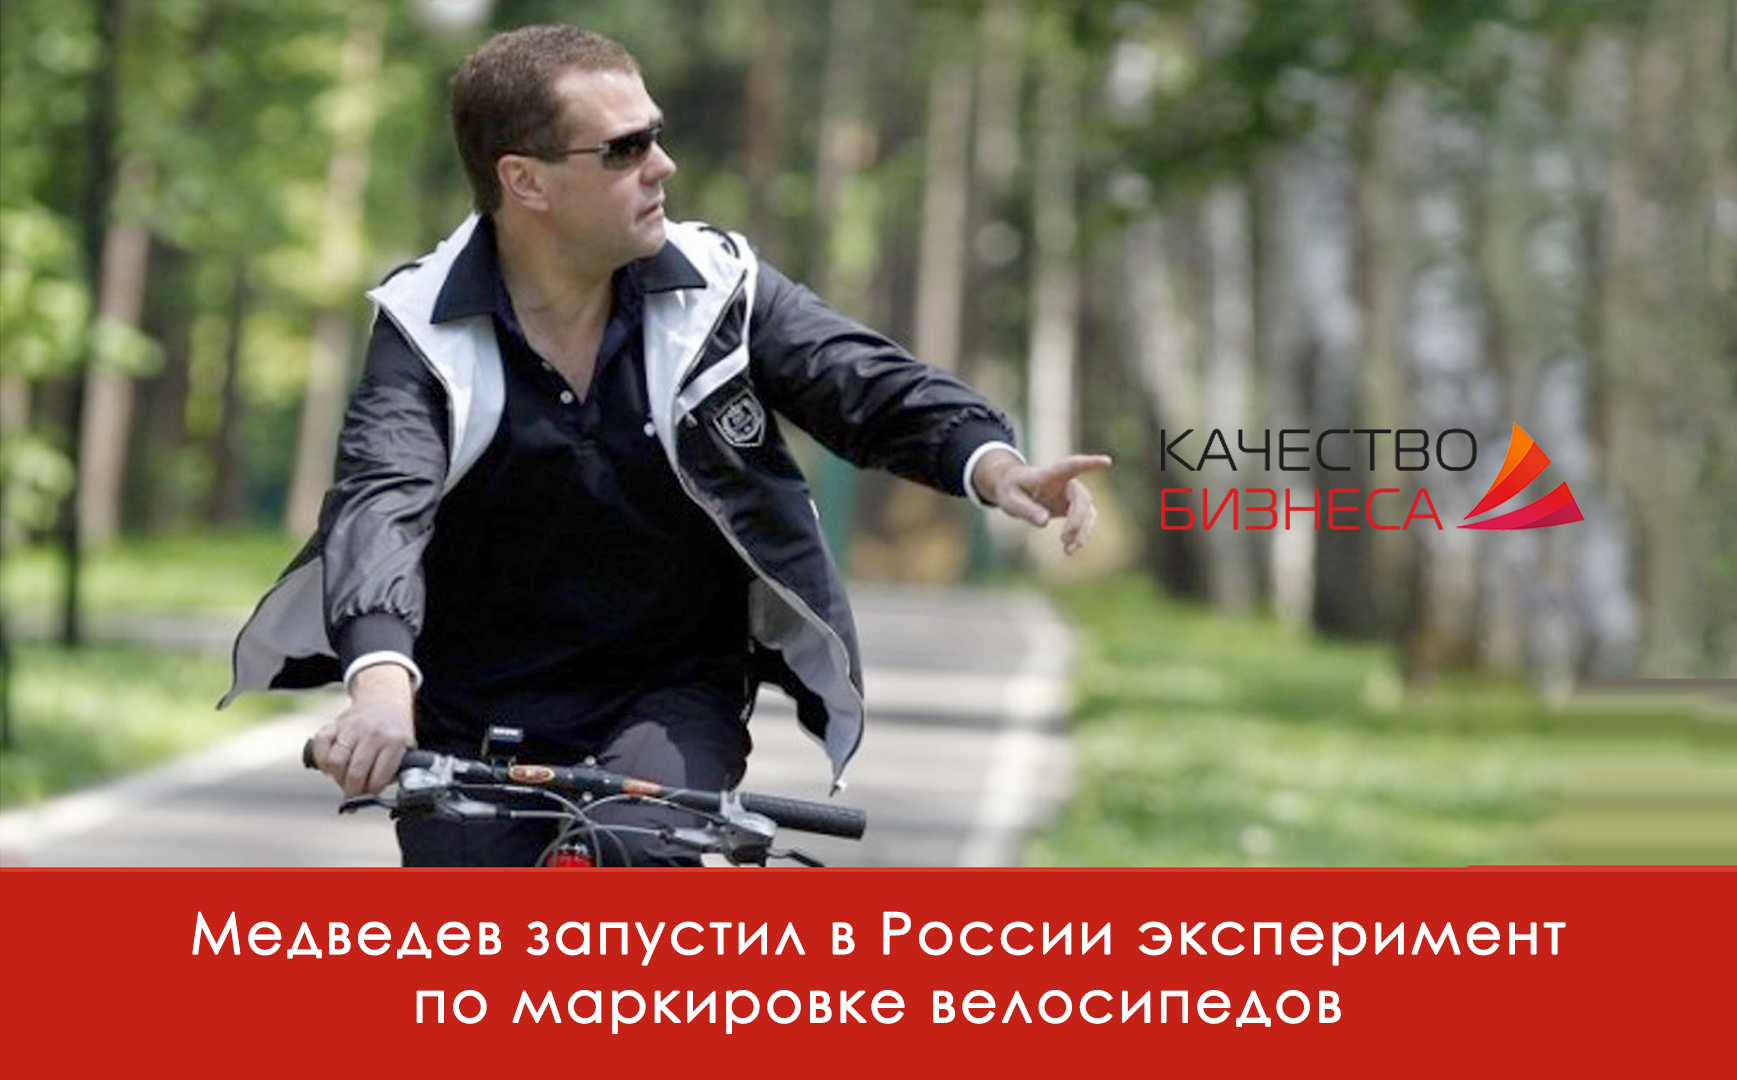 Медведев запустил в России эксперимент по маркировке велосипедов